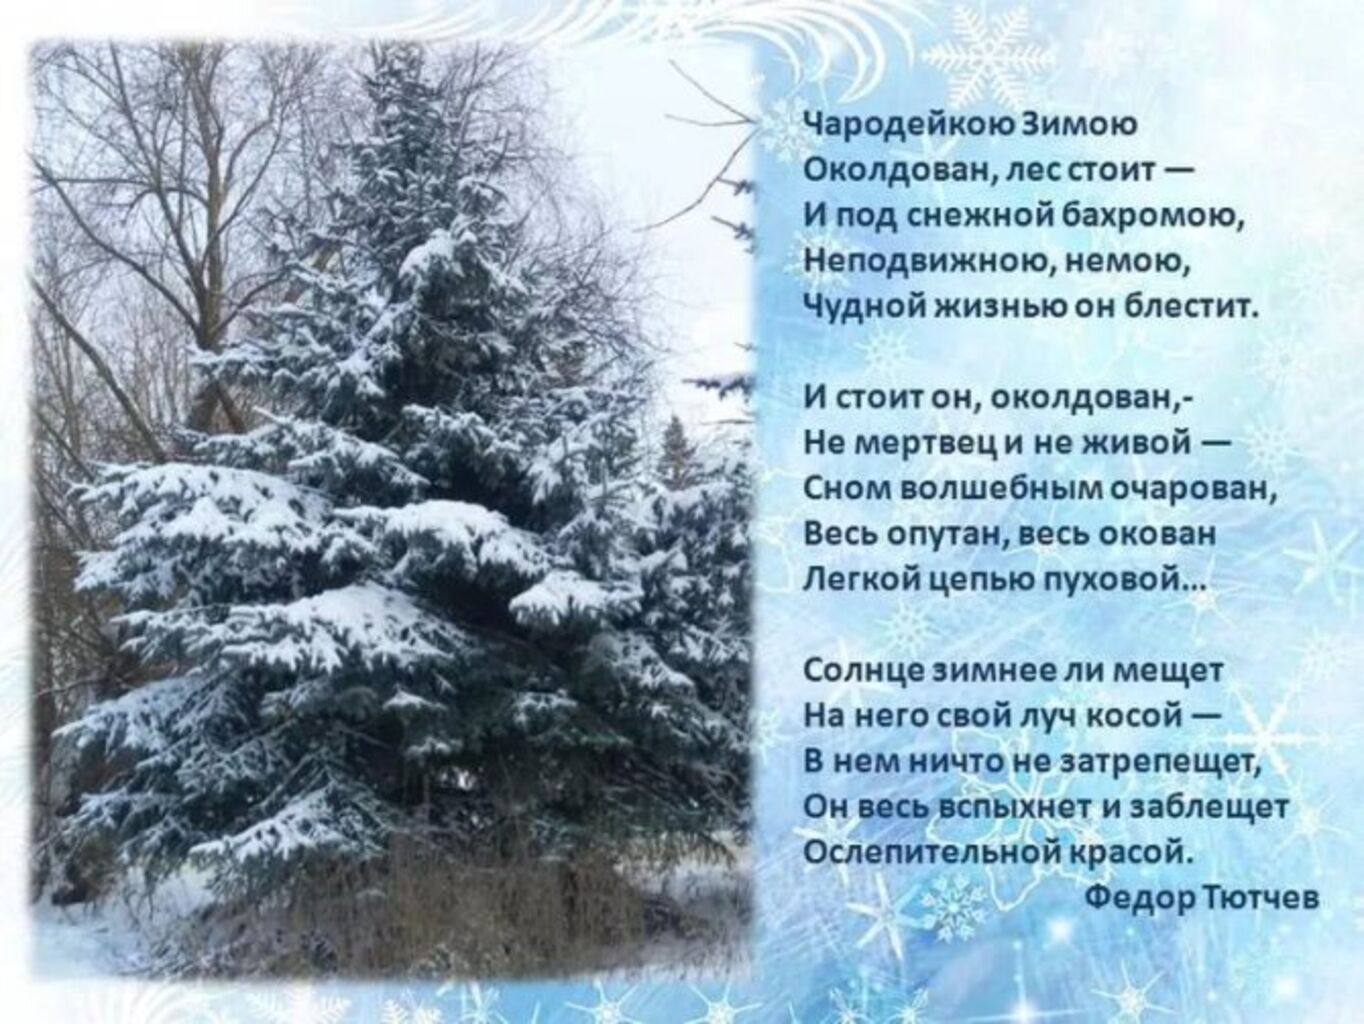 Фёдор Тютчев стих Чародейкою зимою